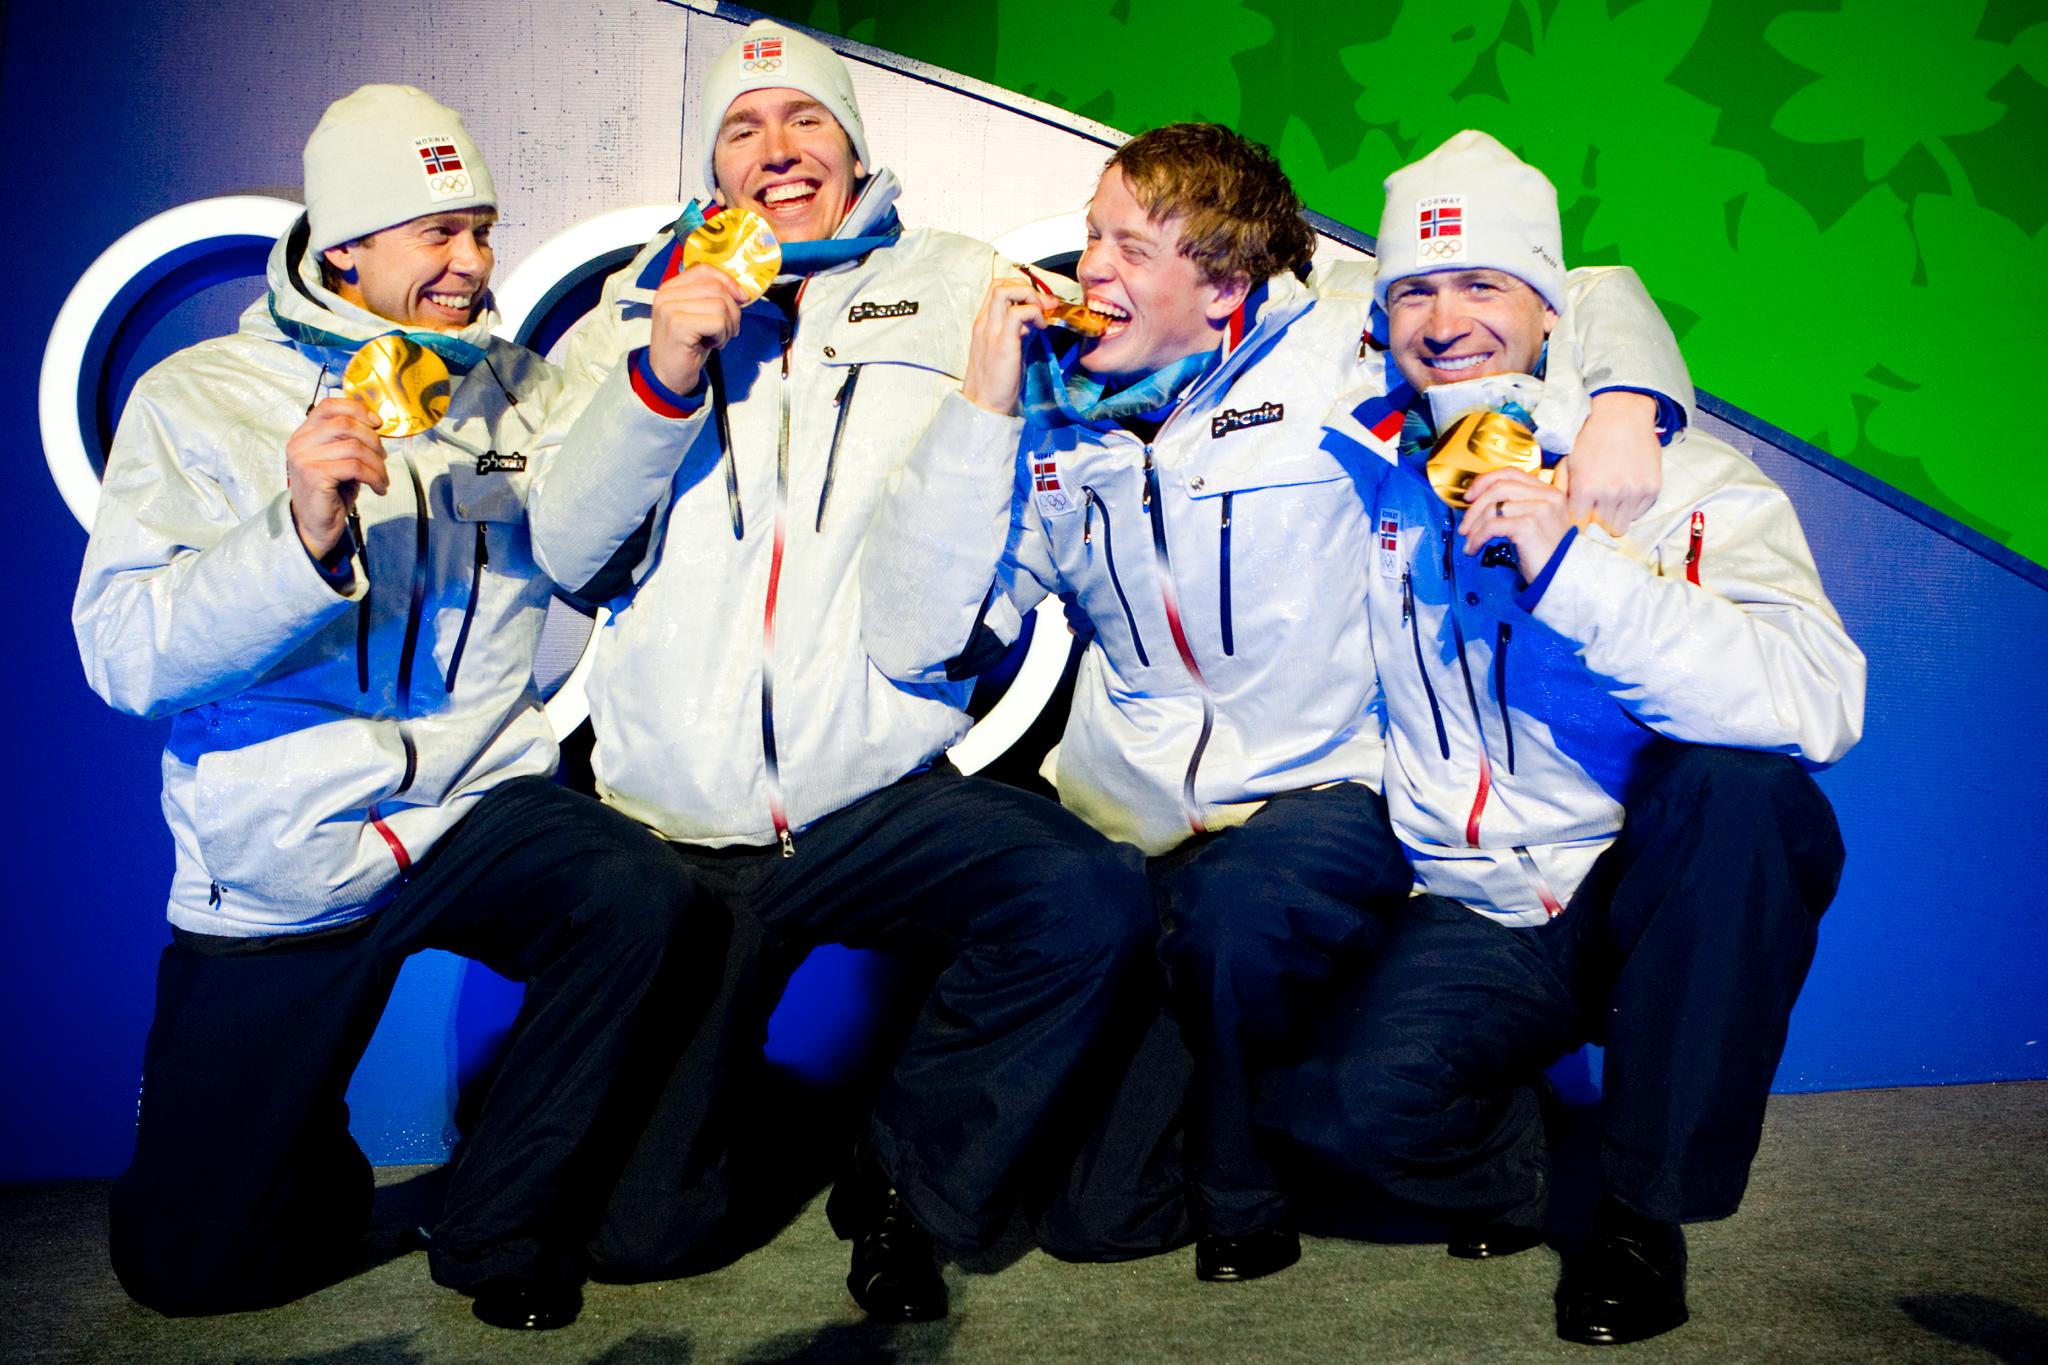 Fra venstre Halvard Hanevold, Emil Hegle Svendsen, Tarjei Bø og Ole Einar Bjørndalen med gullmedaljene i skiskyting, 4 x 7,5 km stafett i Whistler Olympic Park under OL i Vancouver 2010 i Canada.